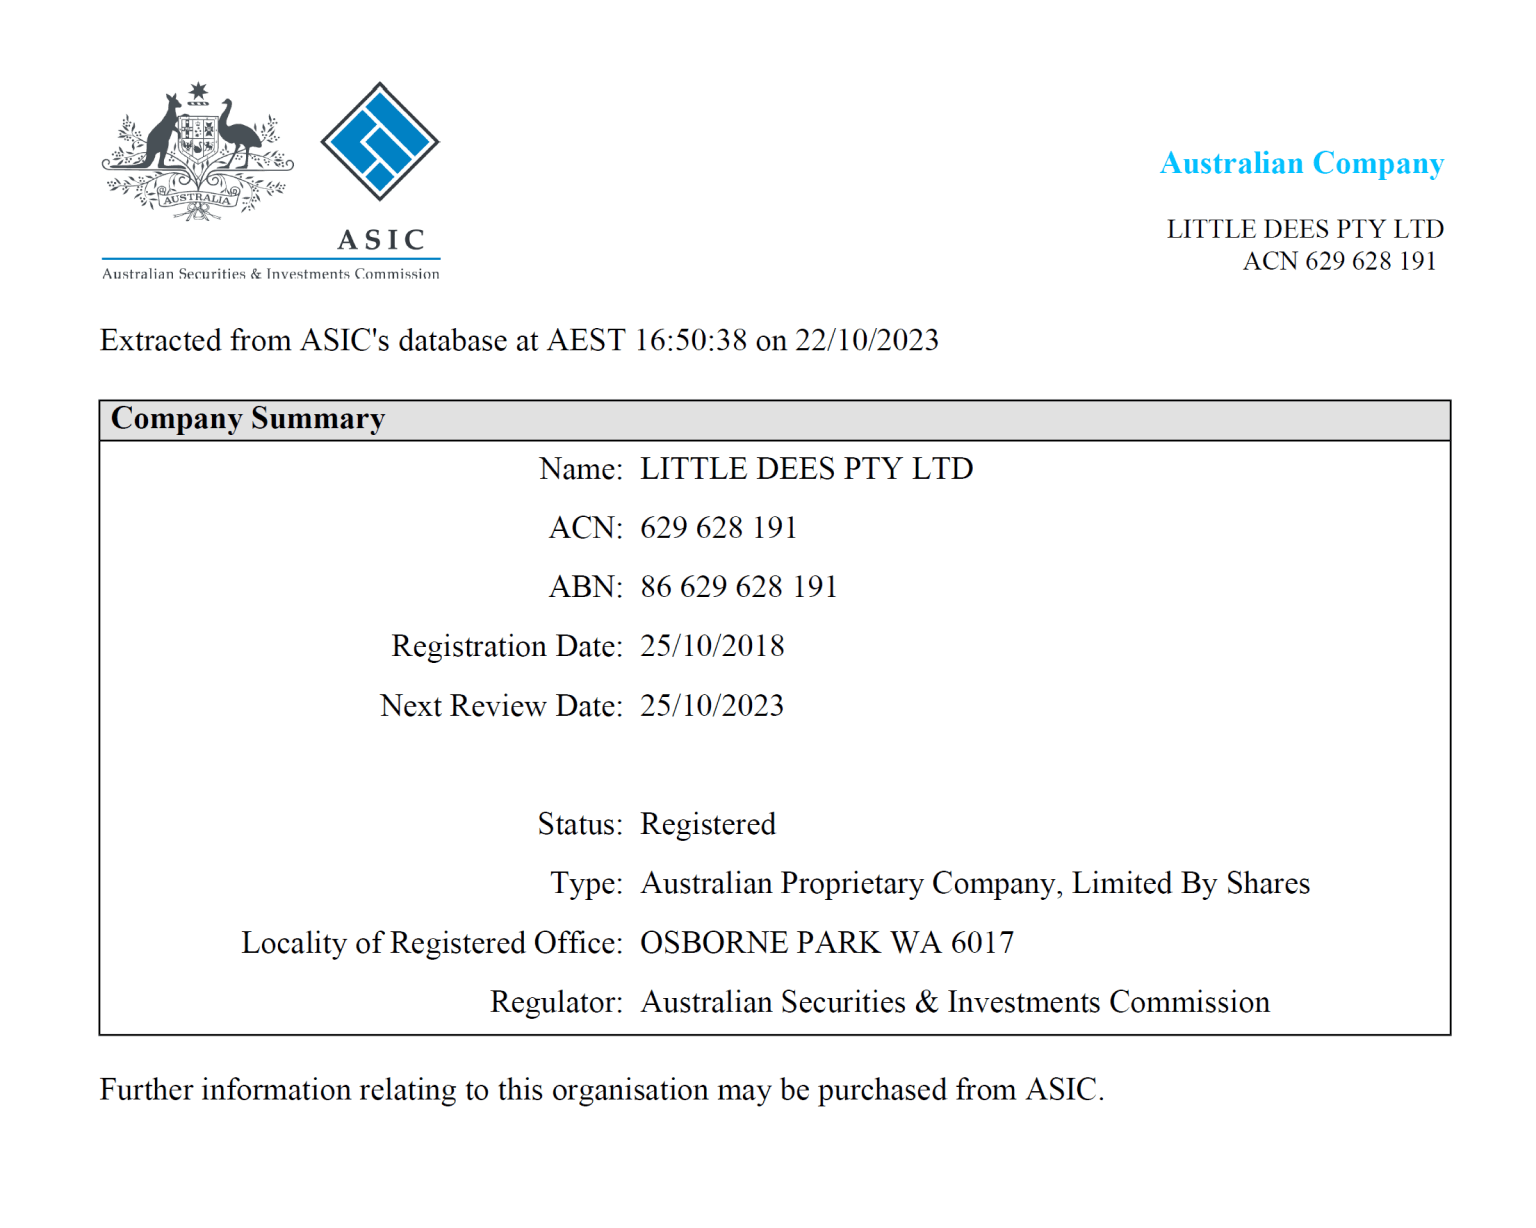 株主であるLittle Dees Pty Ltdはオーストラリアを拠点にする法人で、ASIC（オーストラリア証券取引委員会）に法人登録されています。